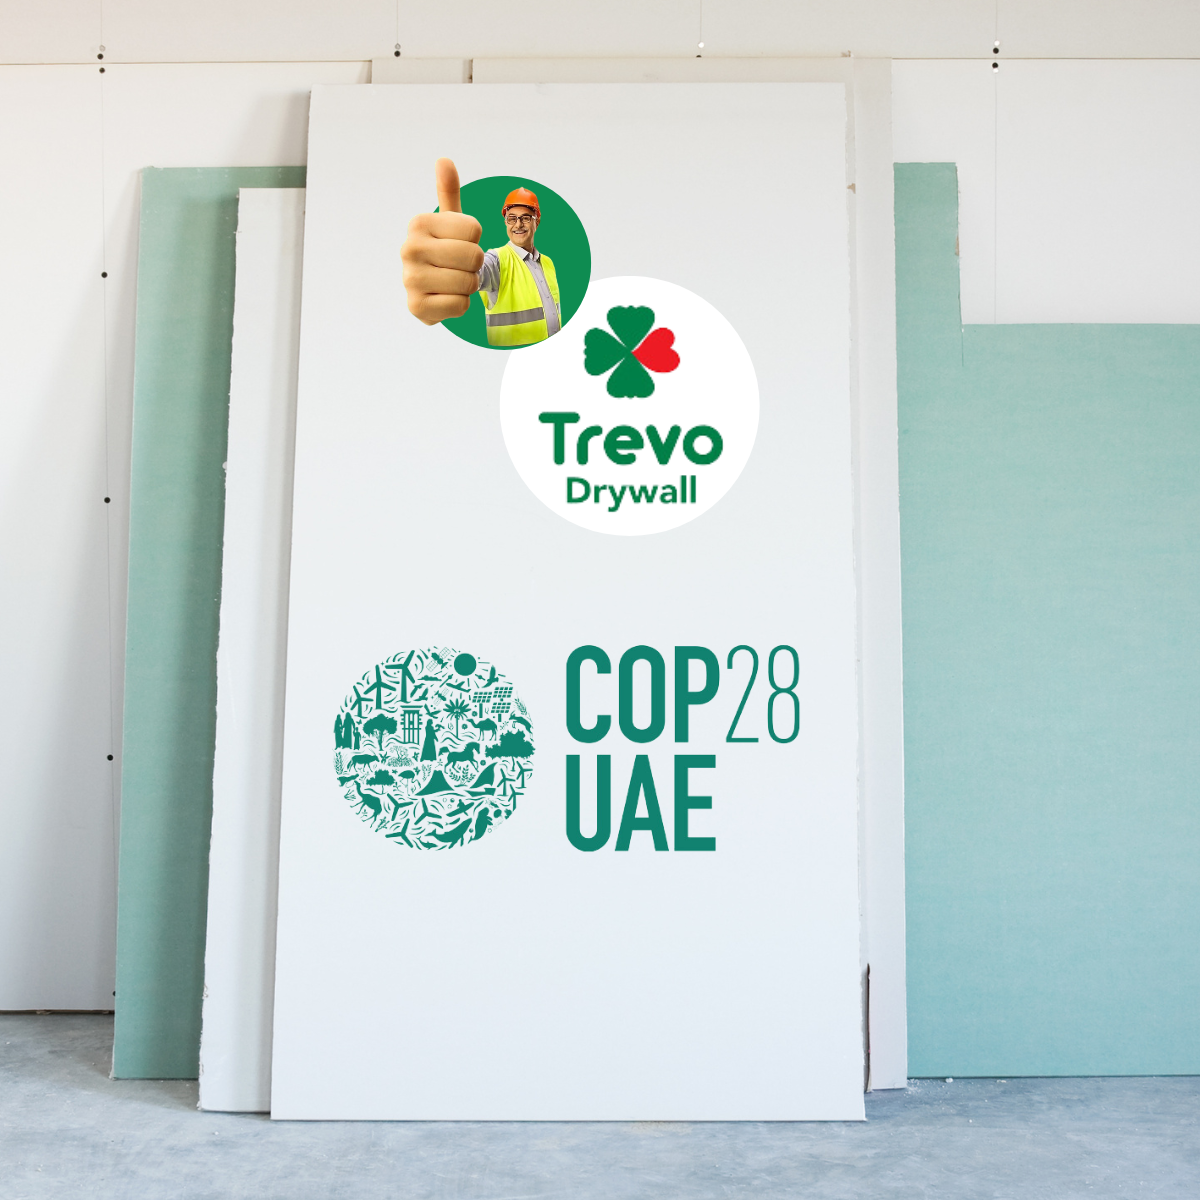 COP 28 e drywall - Construir de maneira sustentável é vital para a redução das emissões, apontou a conferência realizada em Dubai